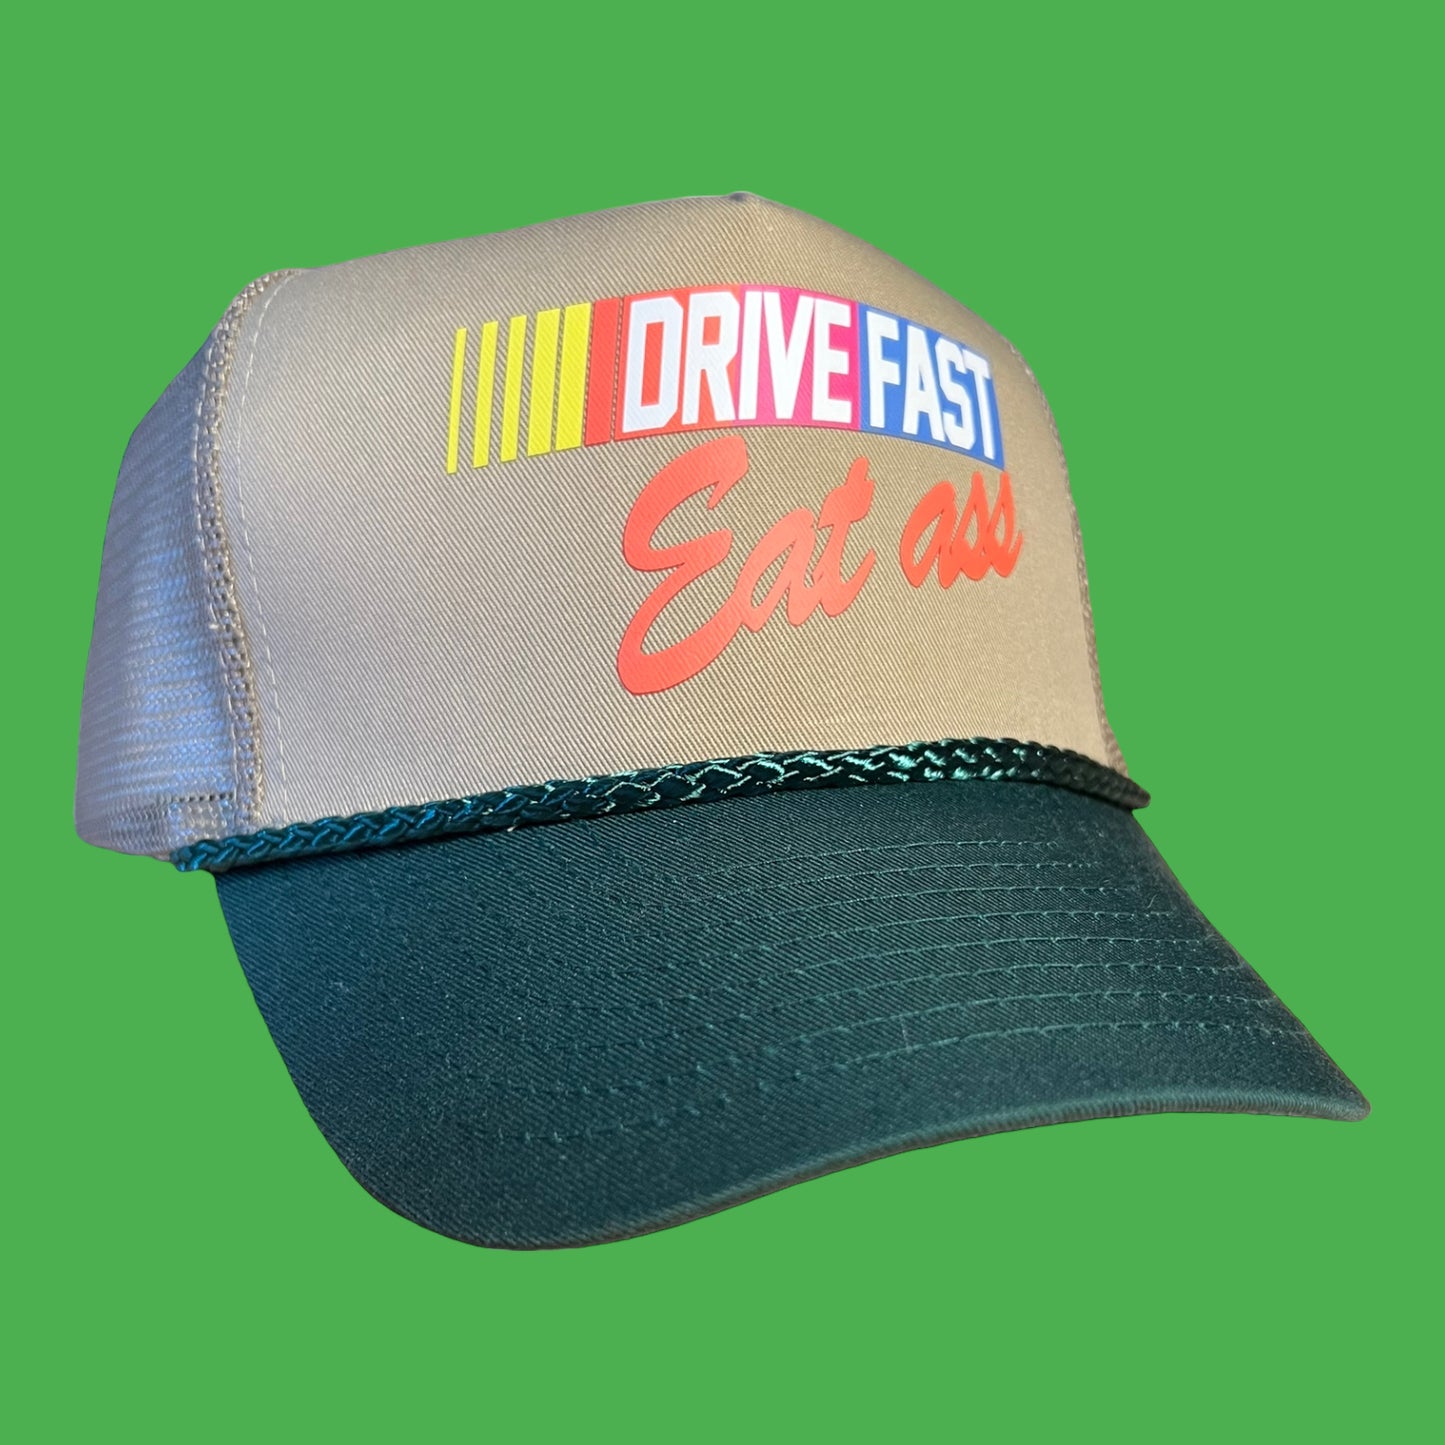 Drive Fast Eat Ass Trucker Hat Funny Trucker Hat Green/Beige